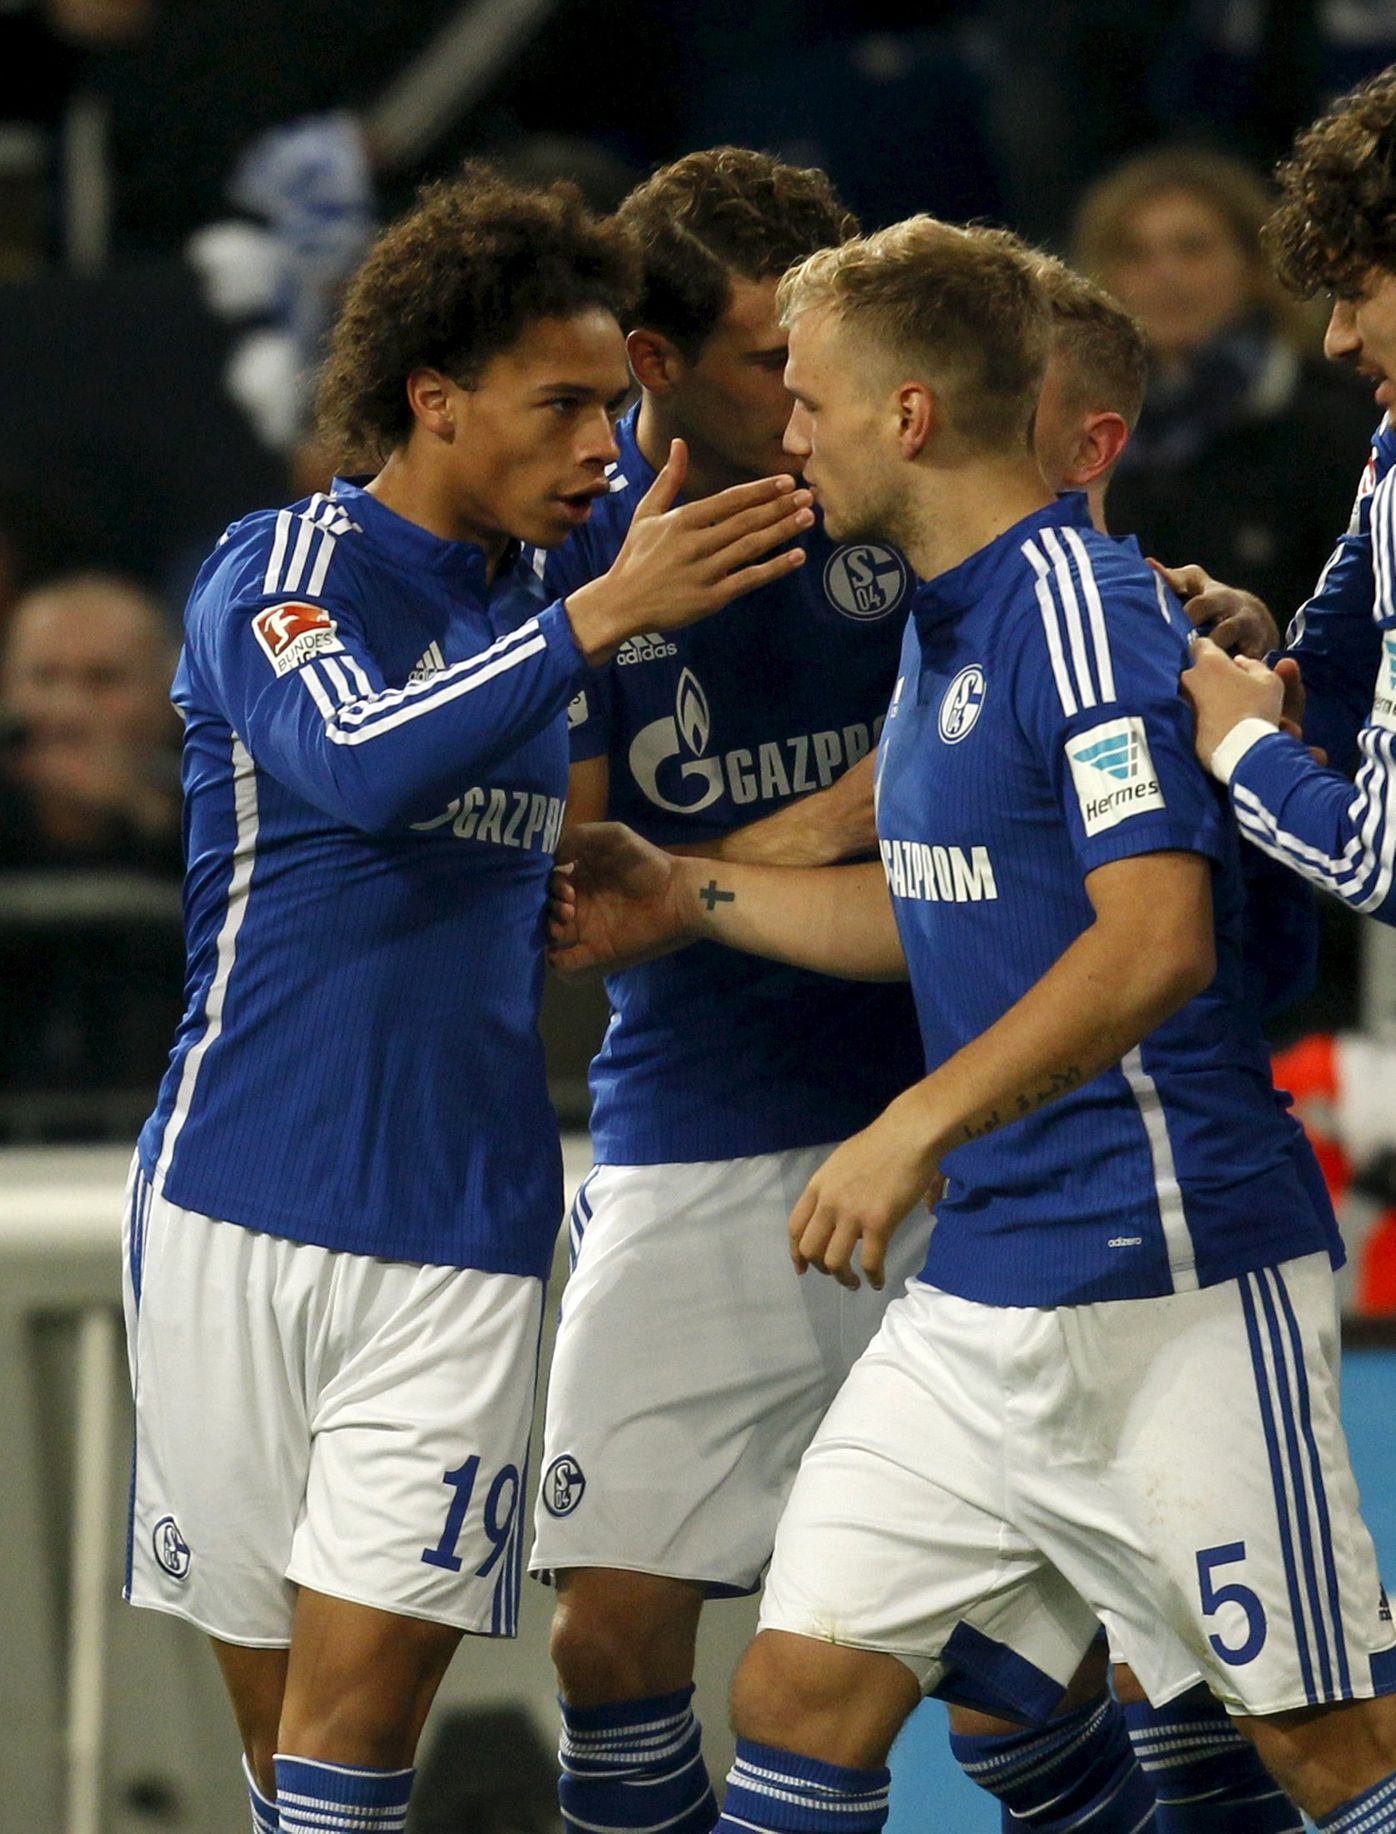 Leroy Sane a Johannes Geis (Schalke 04)